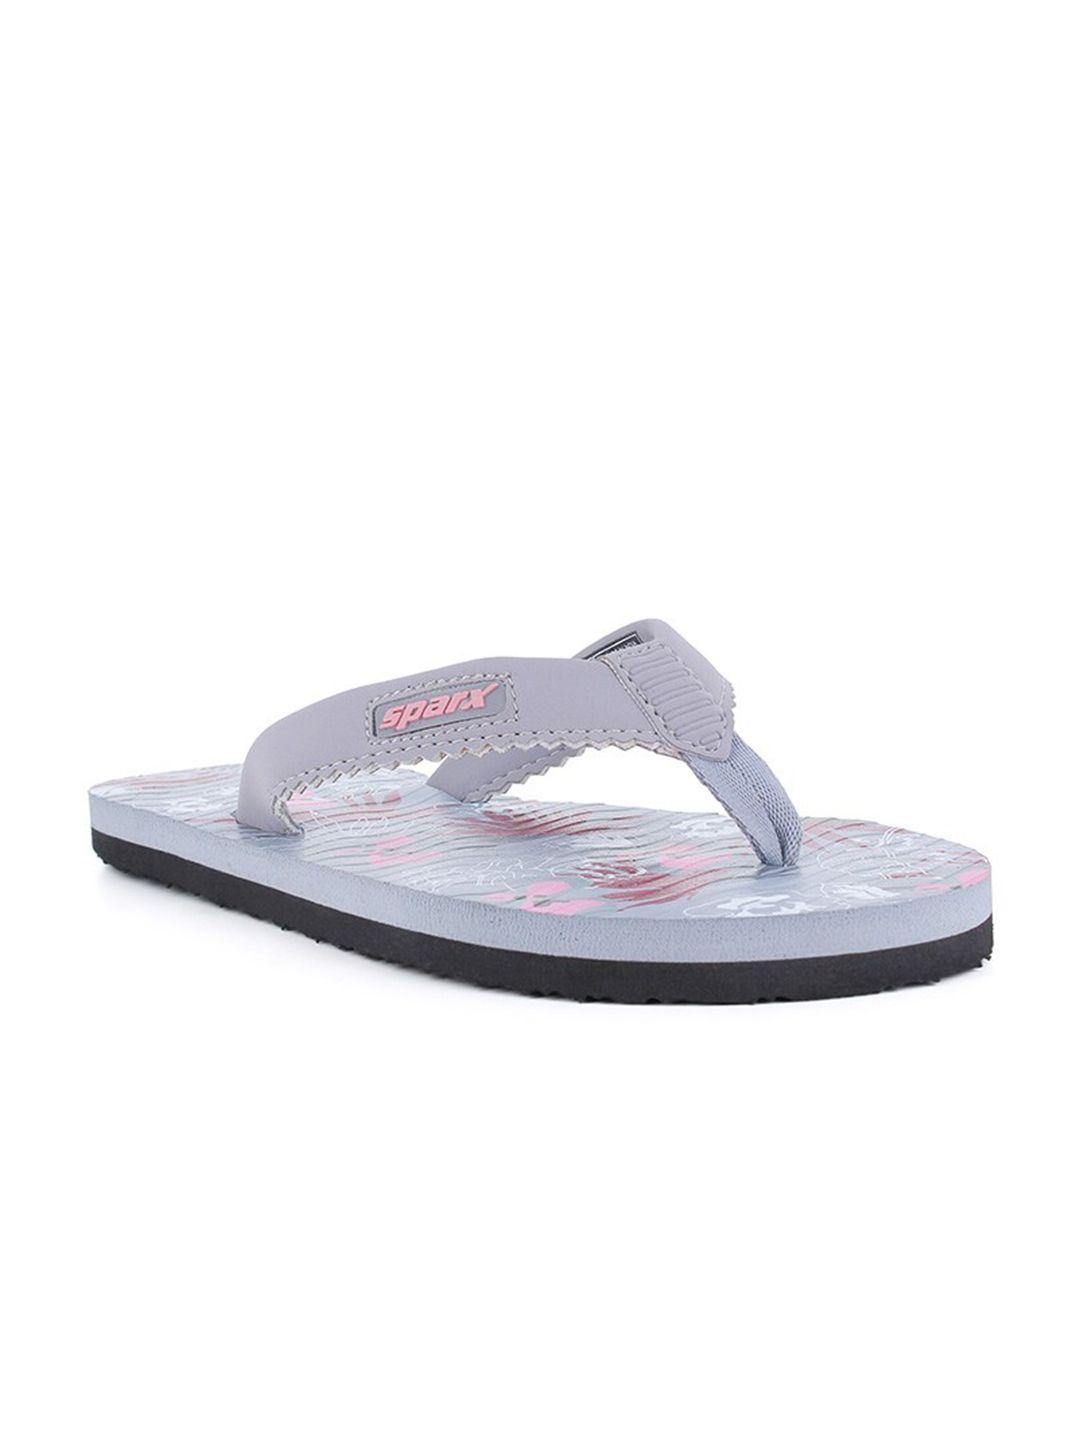 sparx women grey & pink printed thong flip-flops